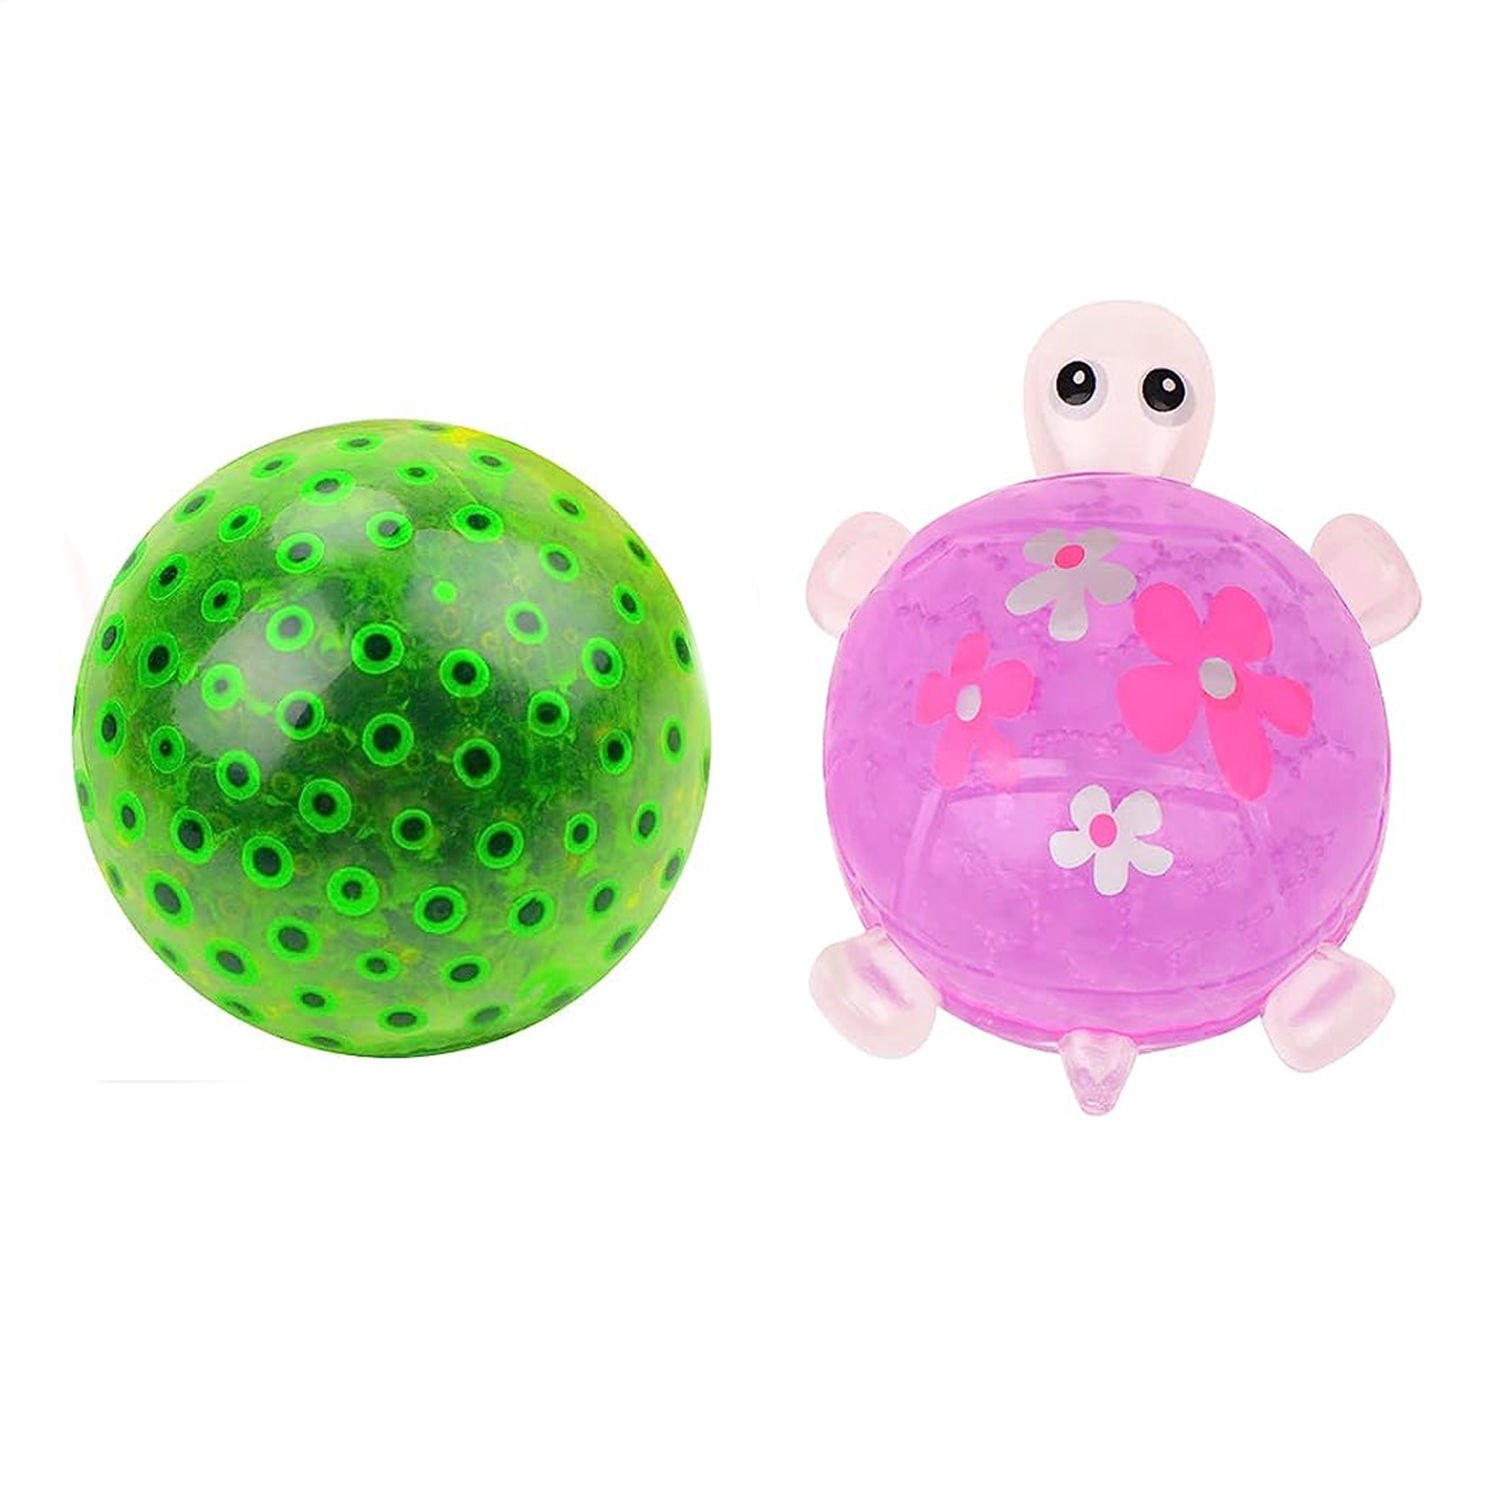 Microcase Yumuşak Kaplumbağa ve Renkli Boncuk Desenli Patlamaz Stres Giderici Sıkma Topu Antistres Stres Topu AL3959